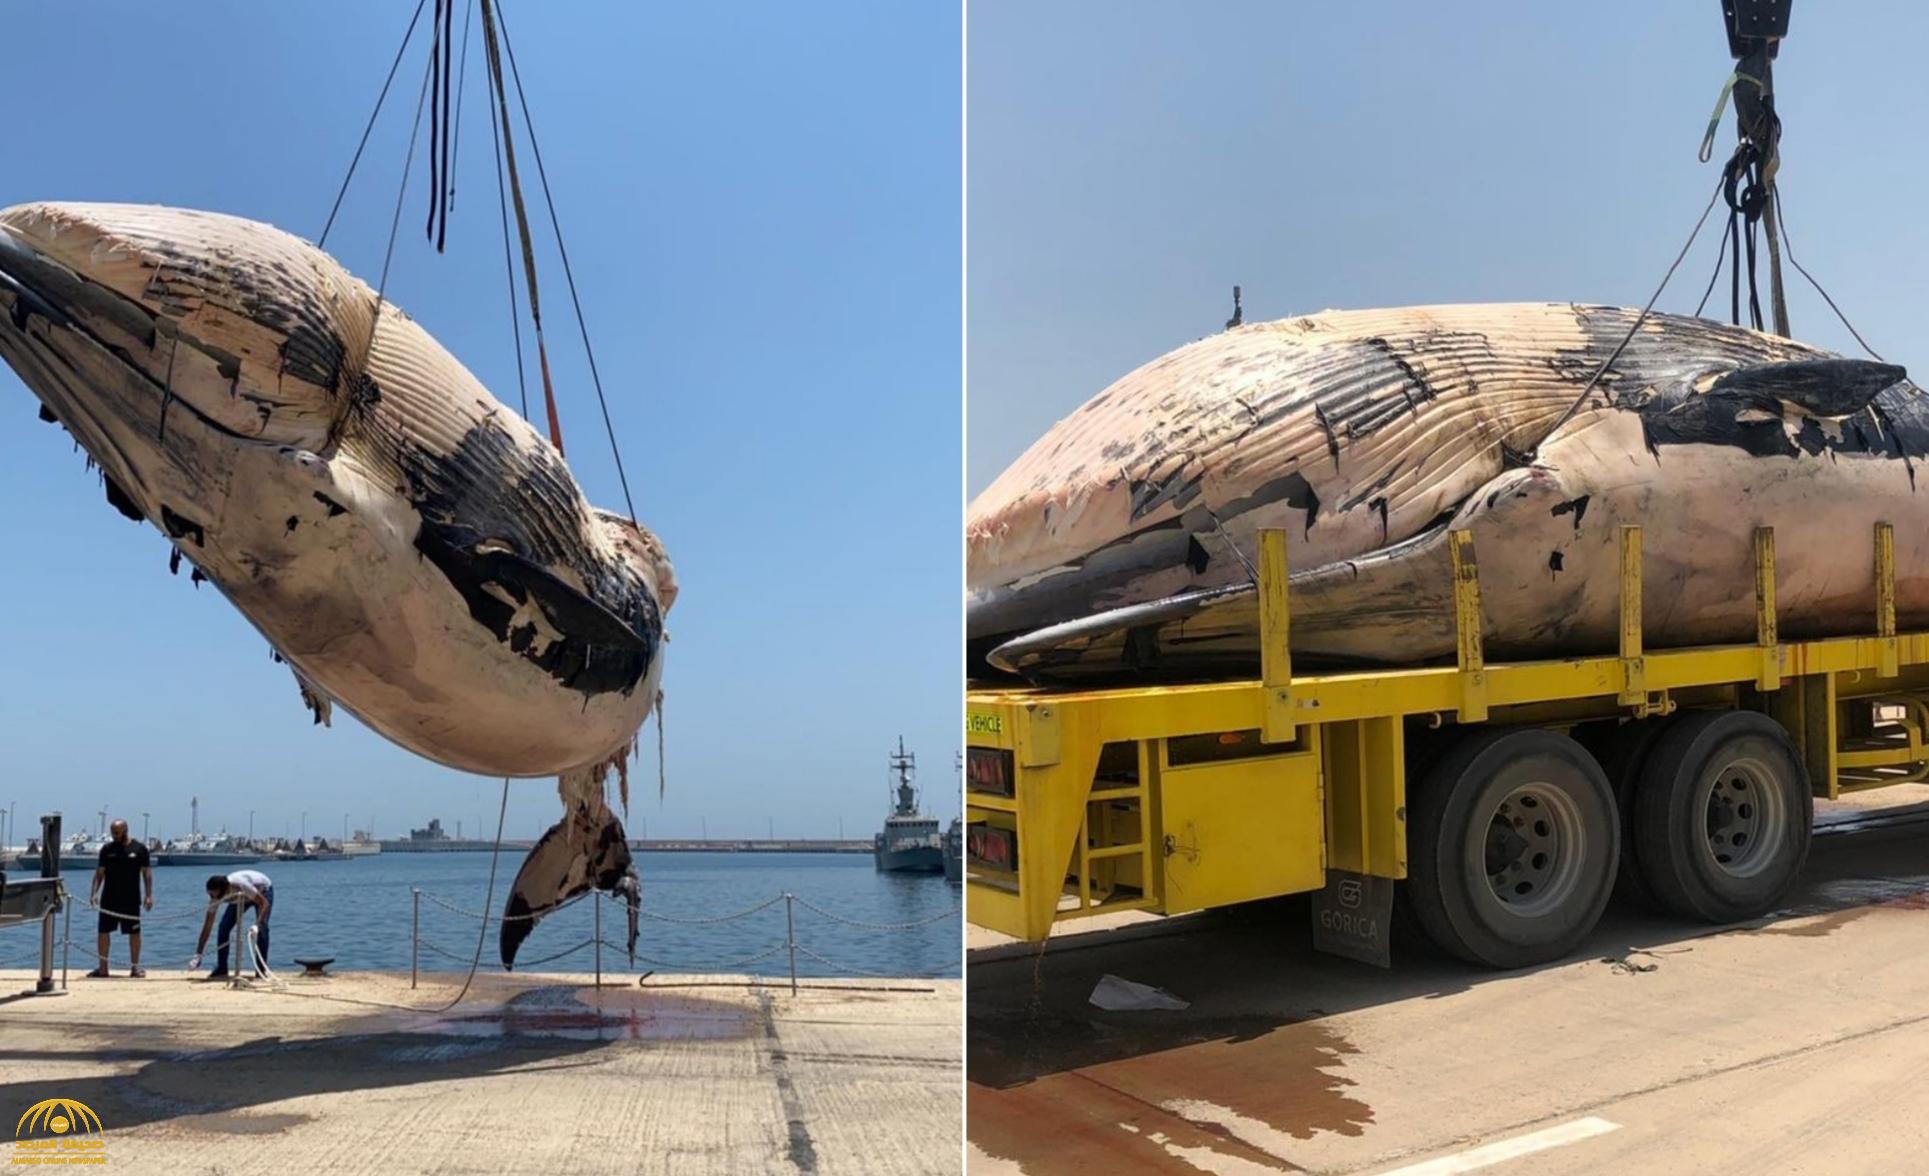 شاهد: انتشال "حوت" بحجم شاحنة نافقًا في الكويت